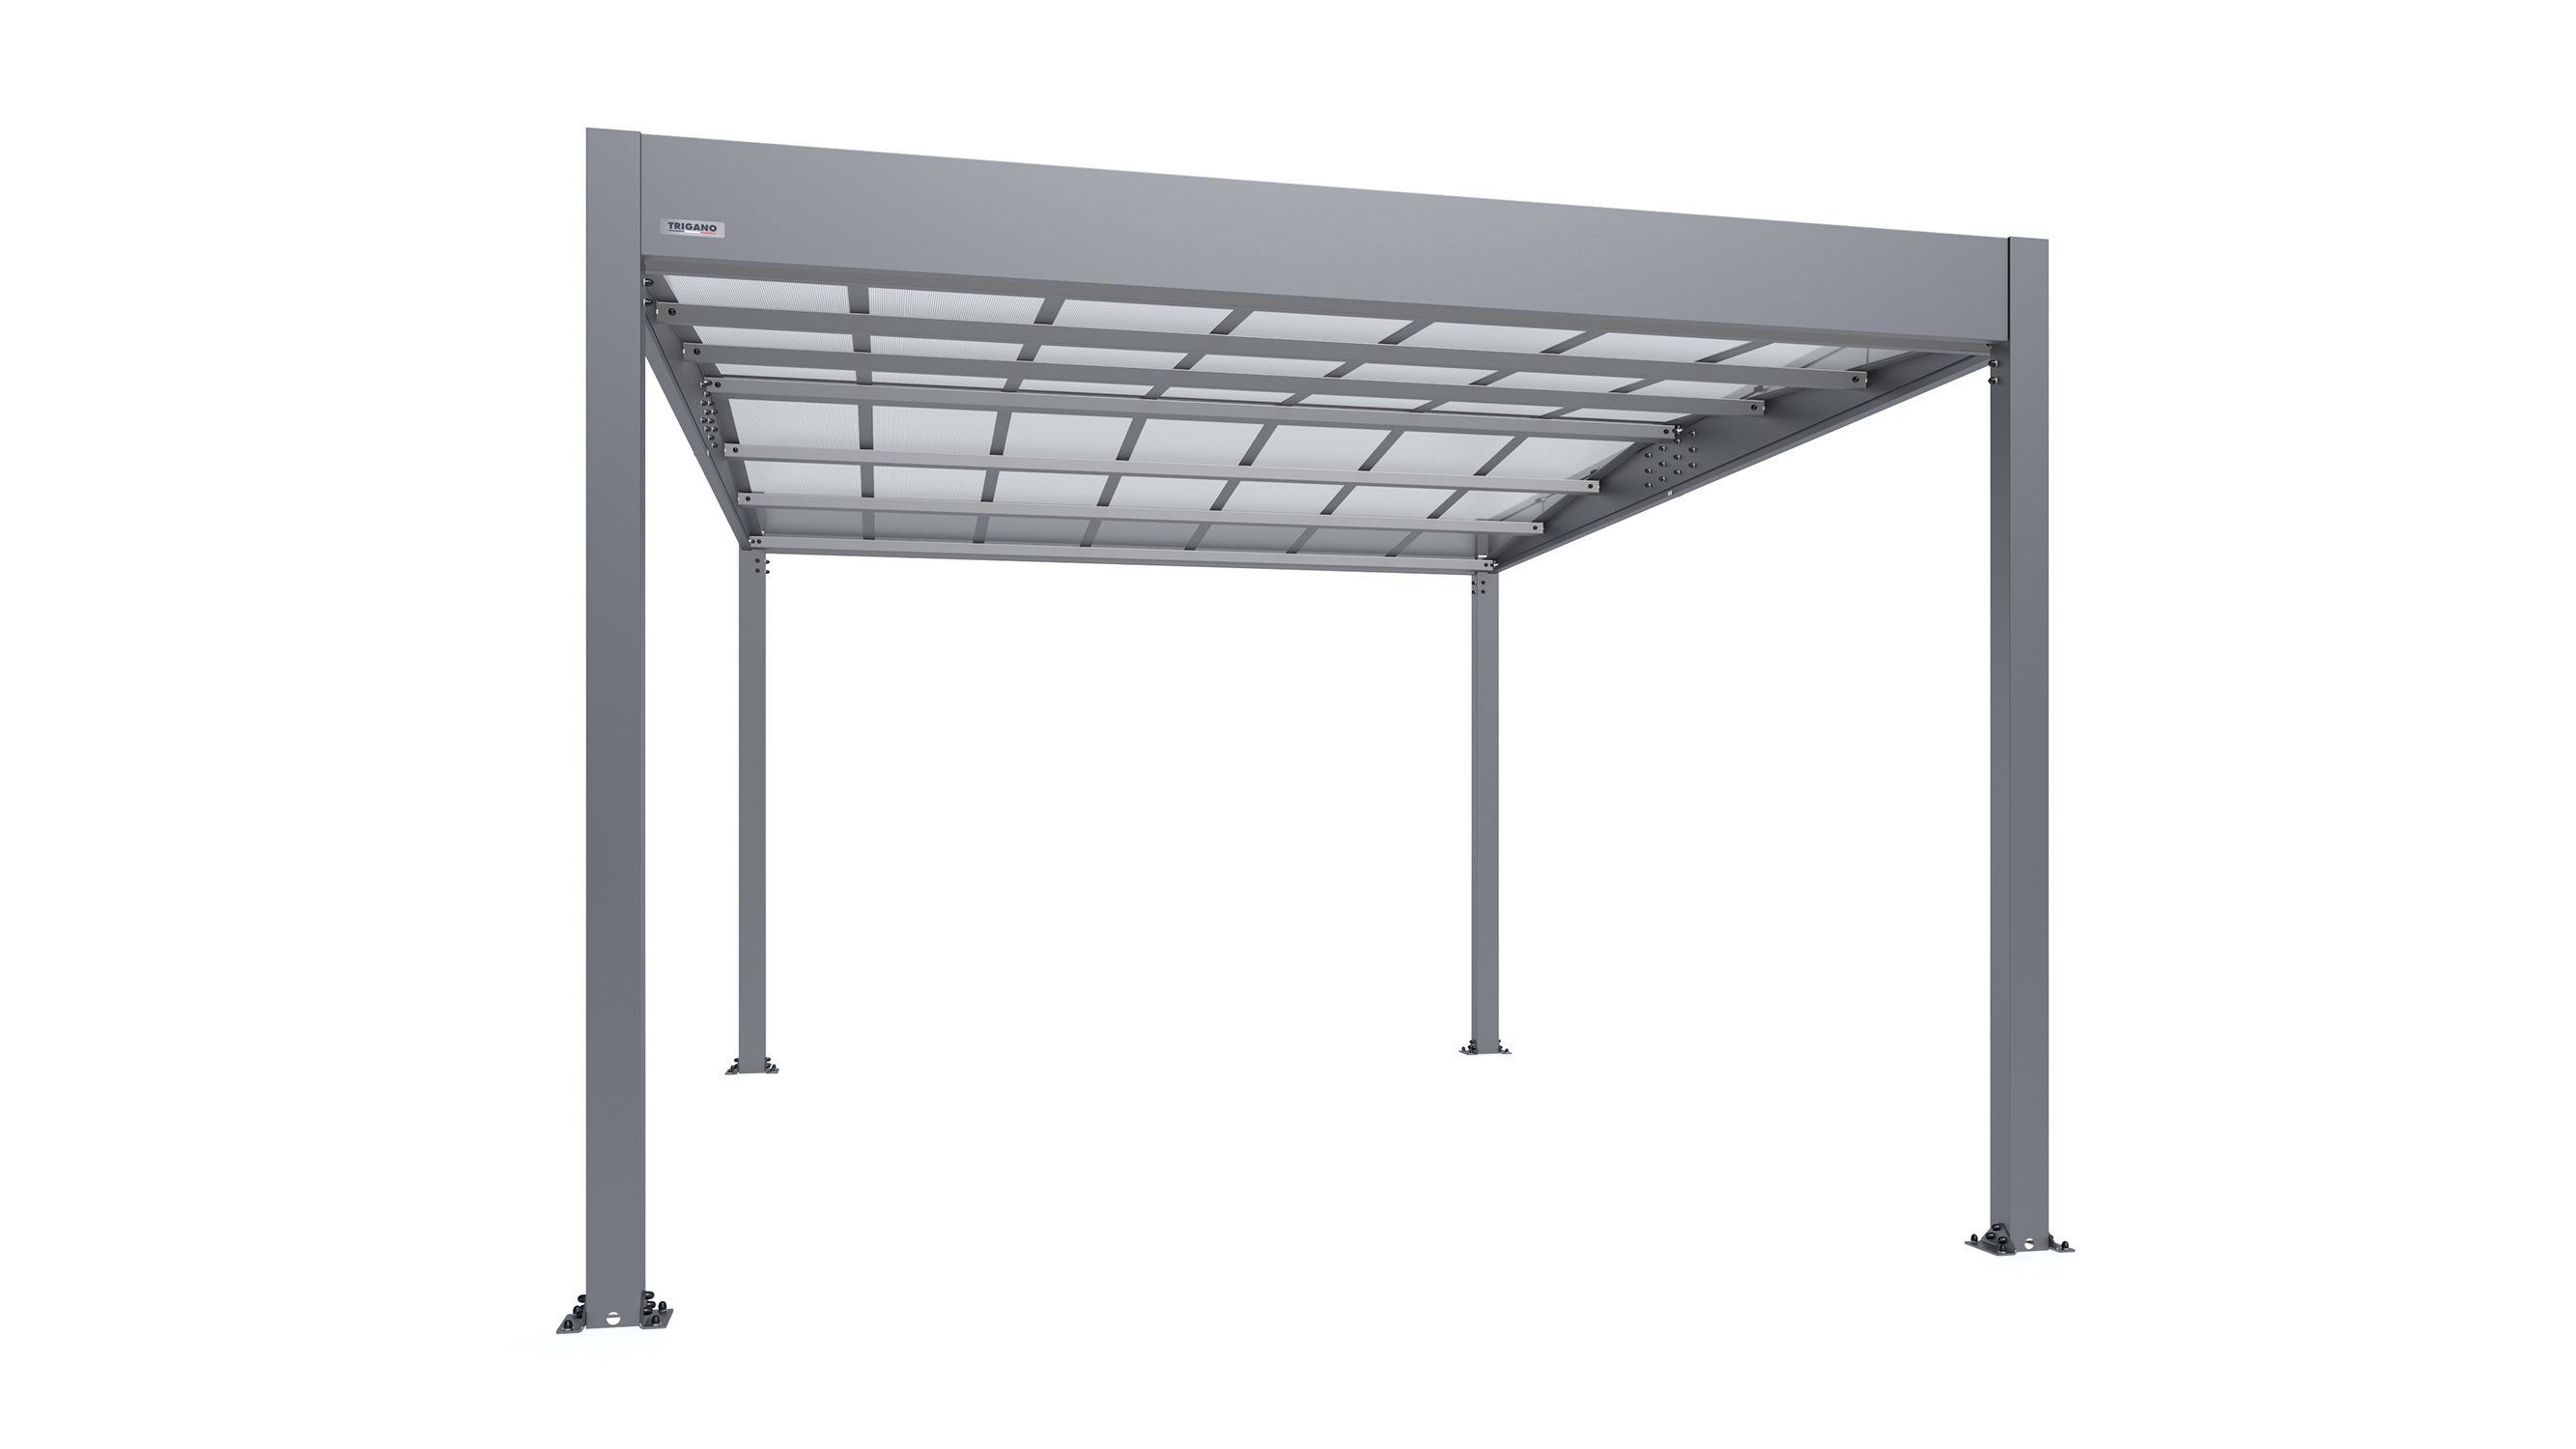 cm 2,10 Libeccio aus Metall Einzelcarport m2 Doppeldach Einfahrtshöhe, Konstruktion, robuste Trigano Aluminium, Carport 16.60